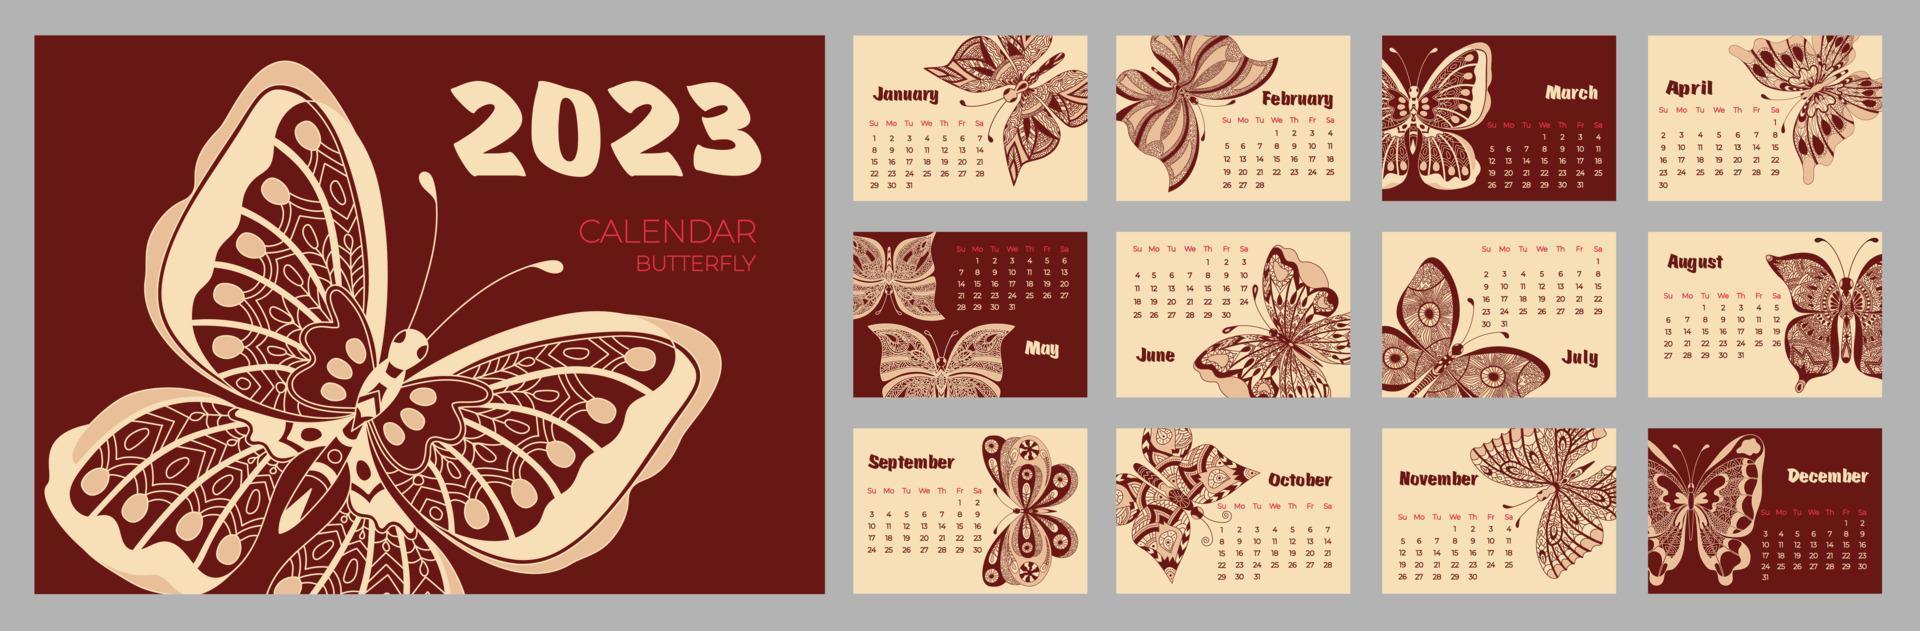 calendario 2023 con mariposa en estilo zentangle. semana comienza el domingo. vector